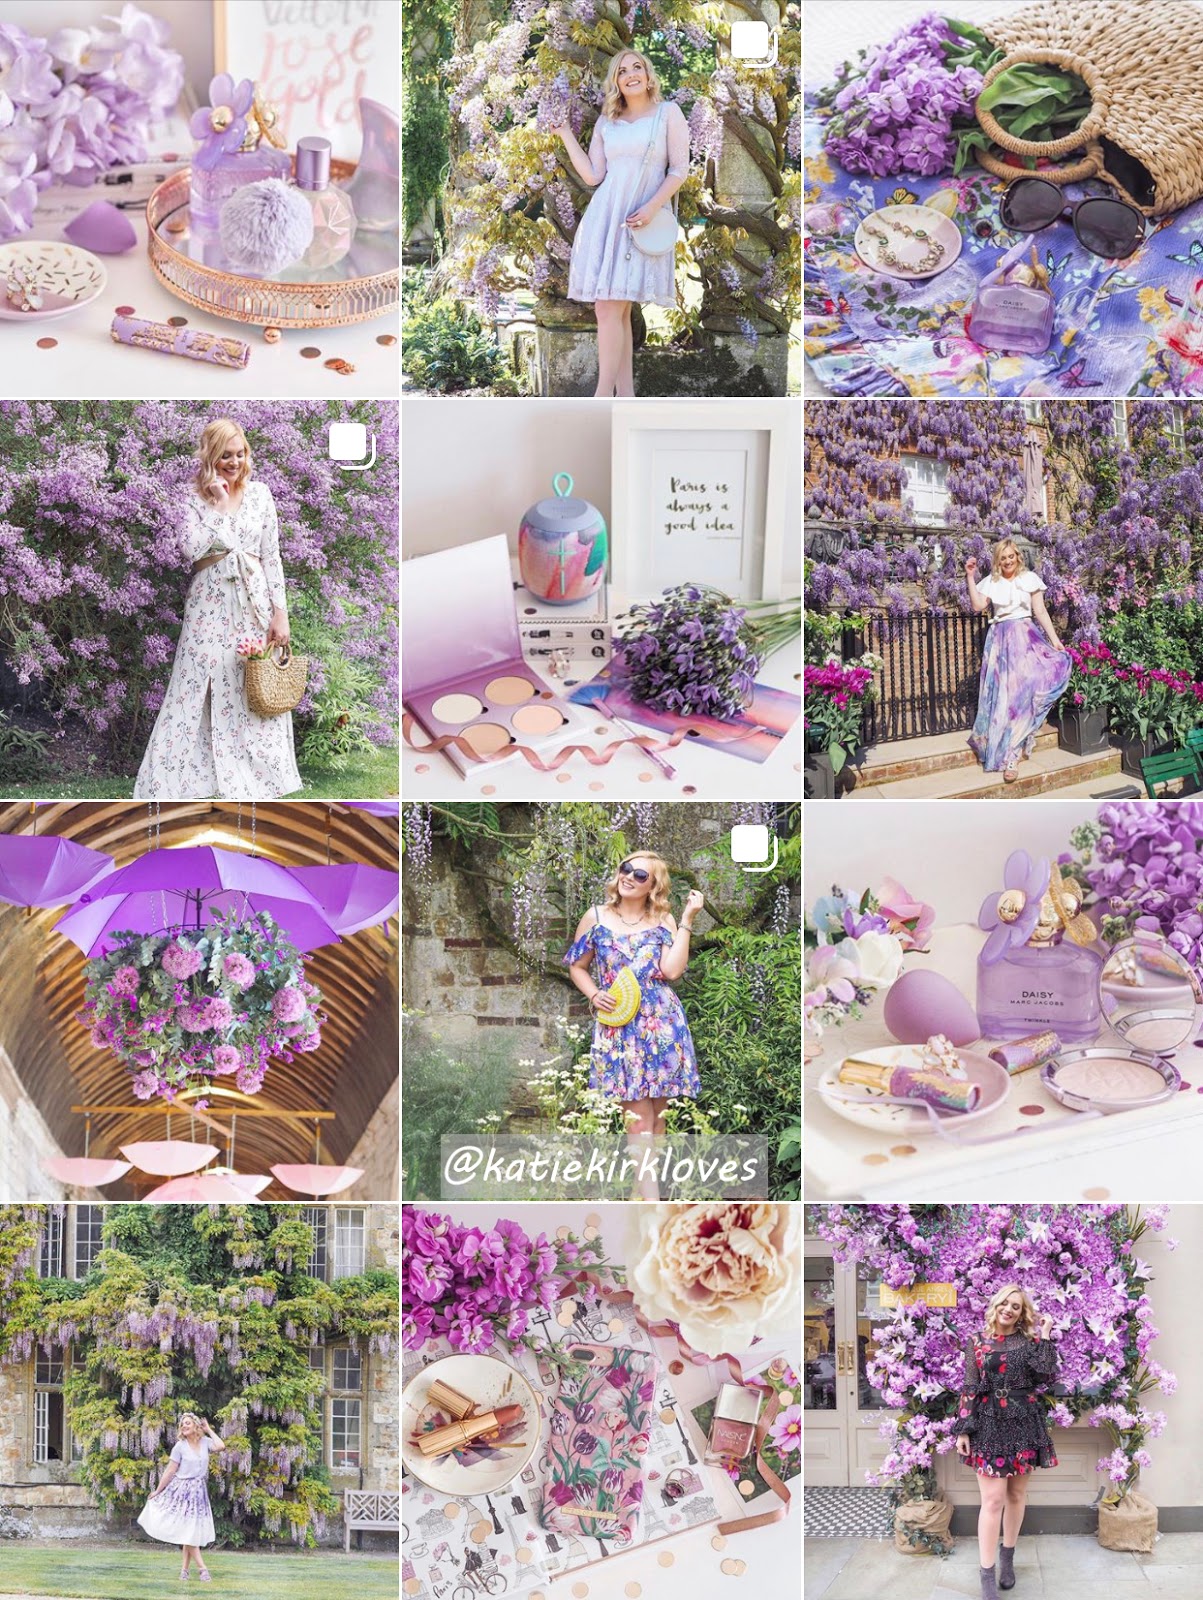 How I Plan My Instagram Themes, Katie Kirk Loves, UK Blogger, Instagram, Instagram Tips, Instagram Content, Instagram Theme, Instagram Influencer, Instagram Aesthetic, Photography, UK Fashion Blogger, UK Beauty Blogger, UK Lifestyle Blogger